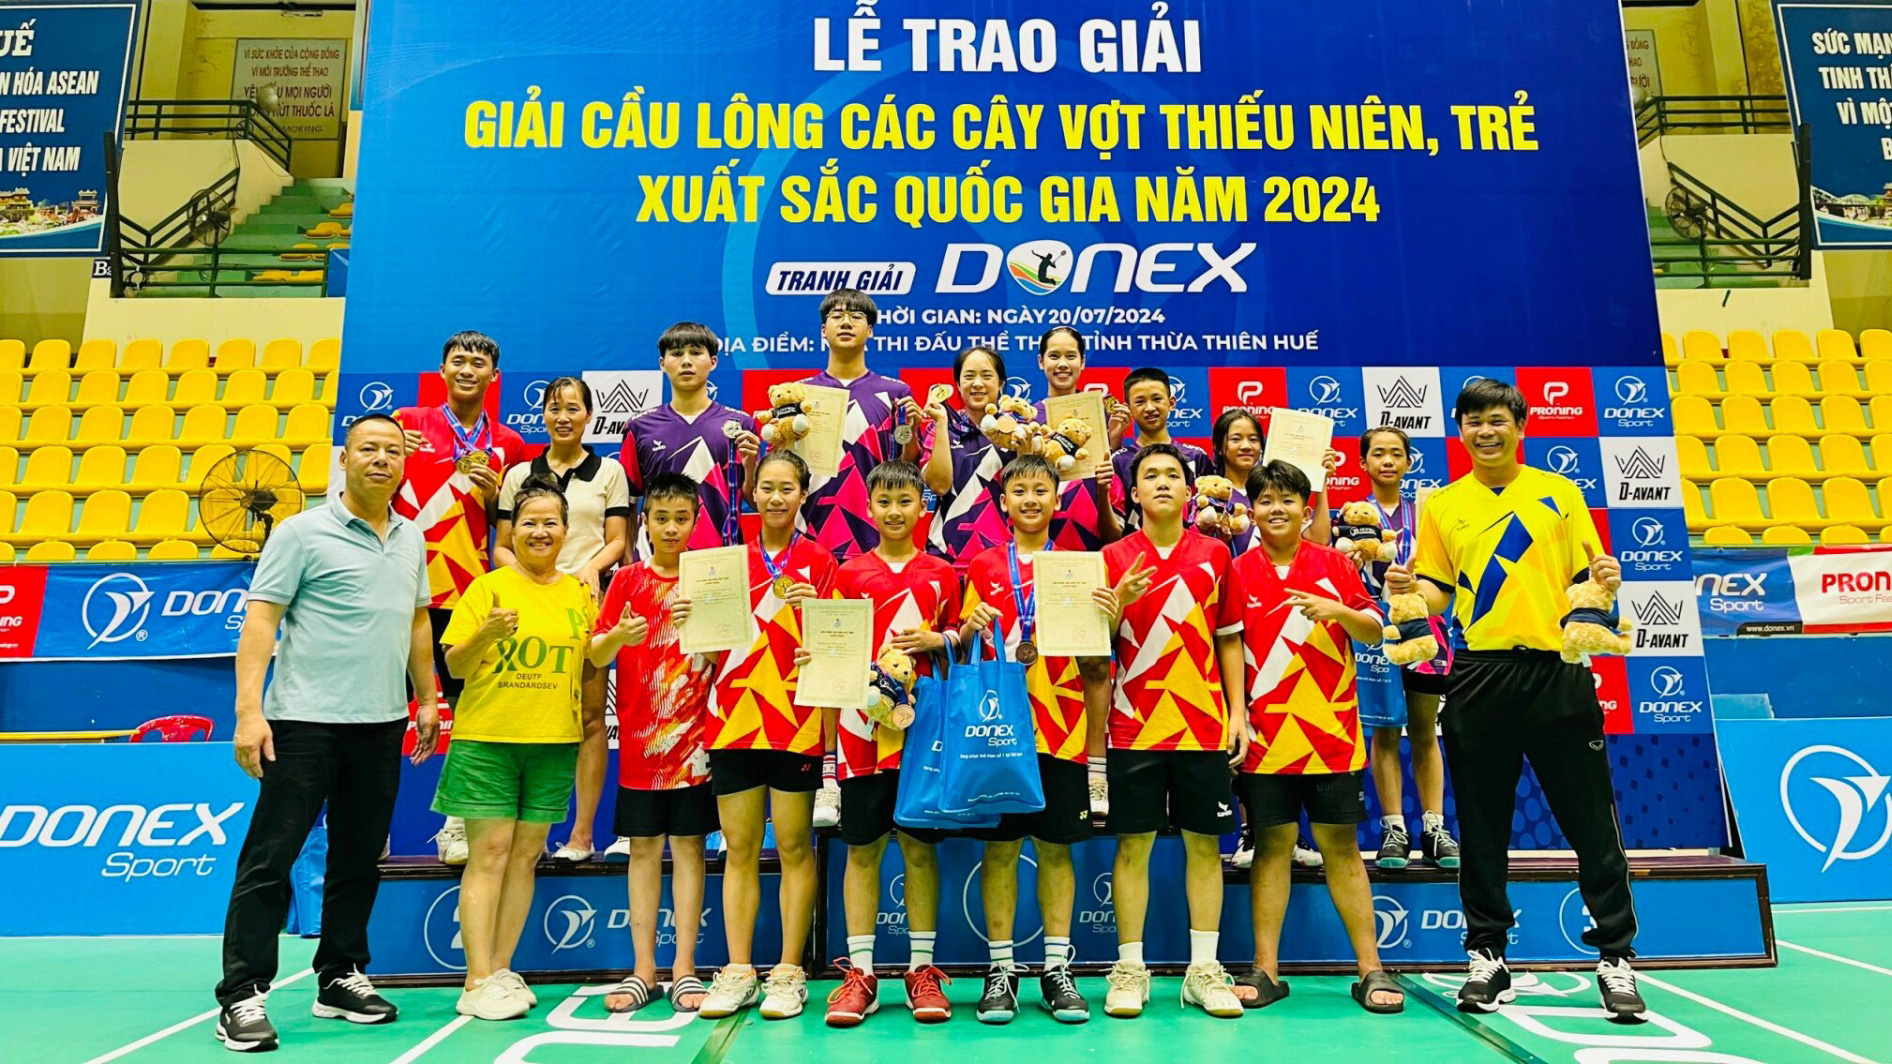 Lâm Đồng xếp thứ 3 toàn đoàn tại Giải Cầu lông các cây vợt thiếu niên, trẻ xuất sắc quốc gia